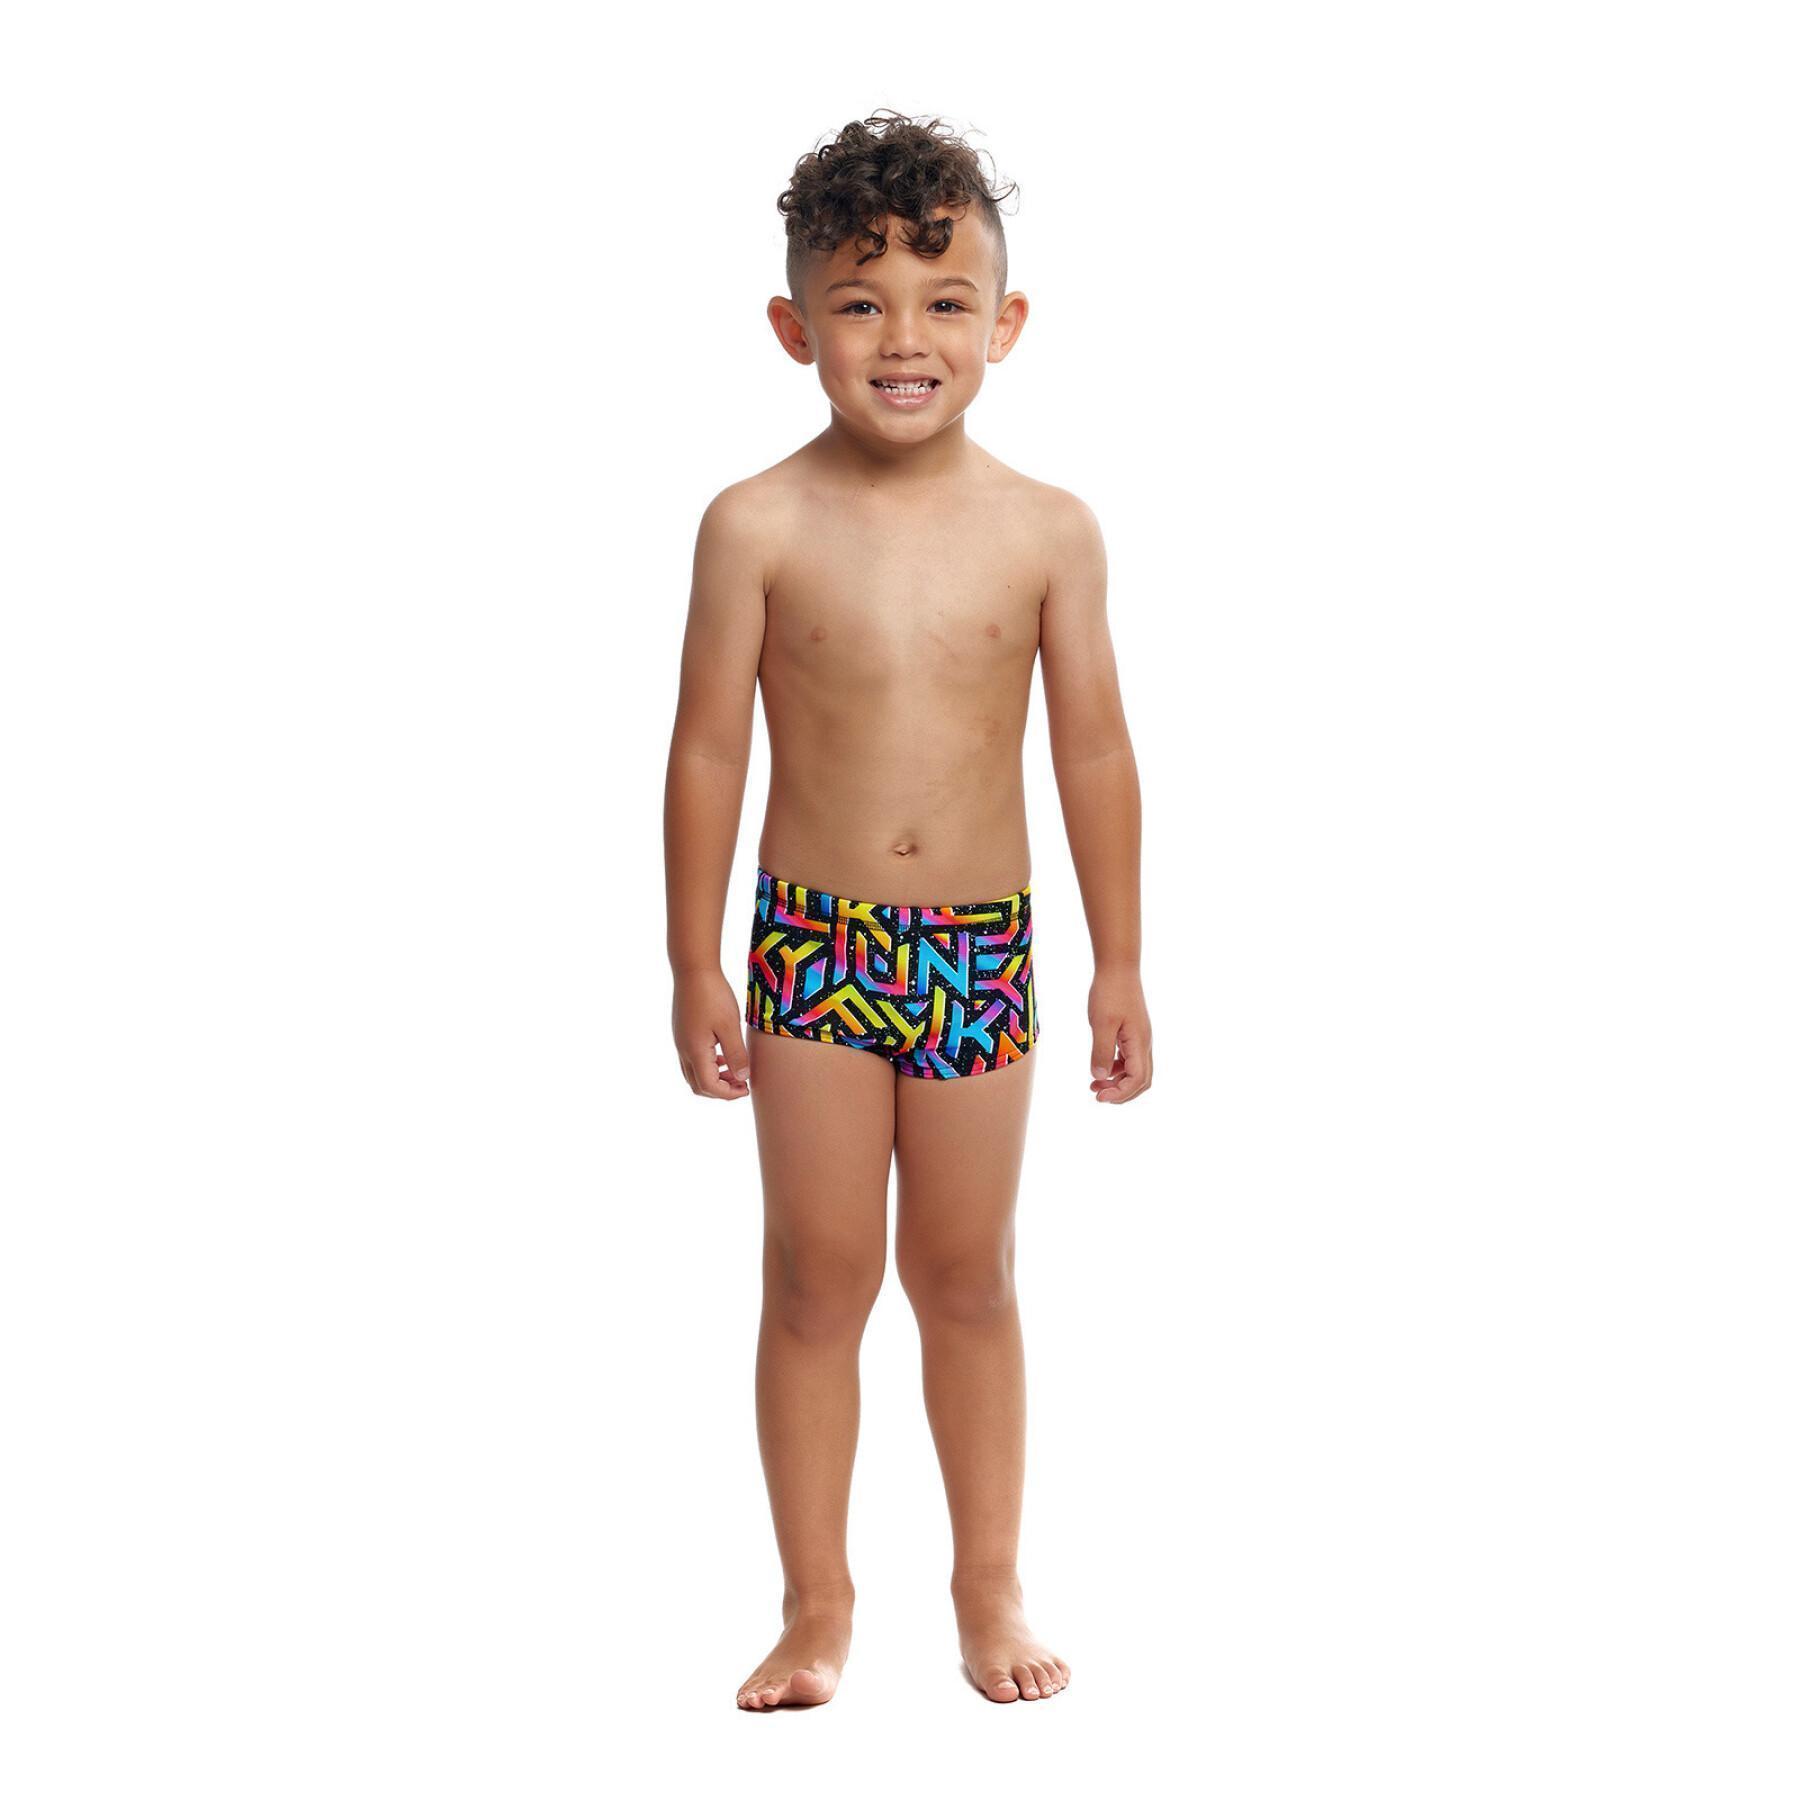 Children's swimsuit Funky Trunks